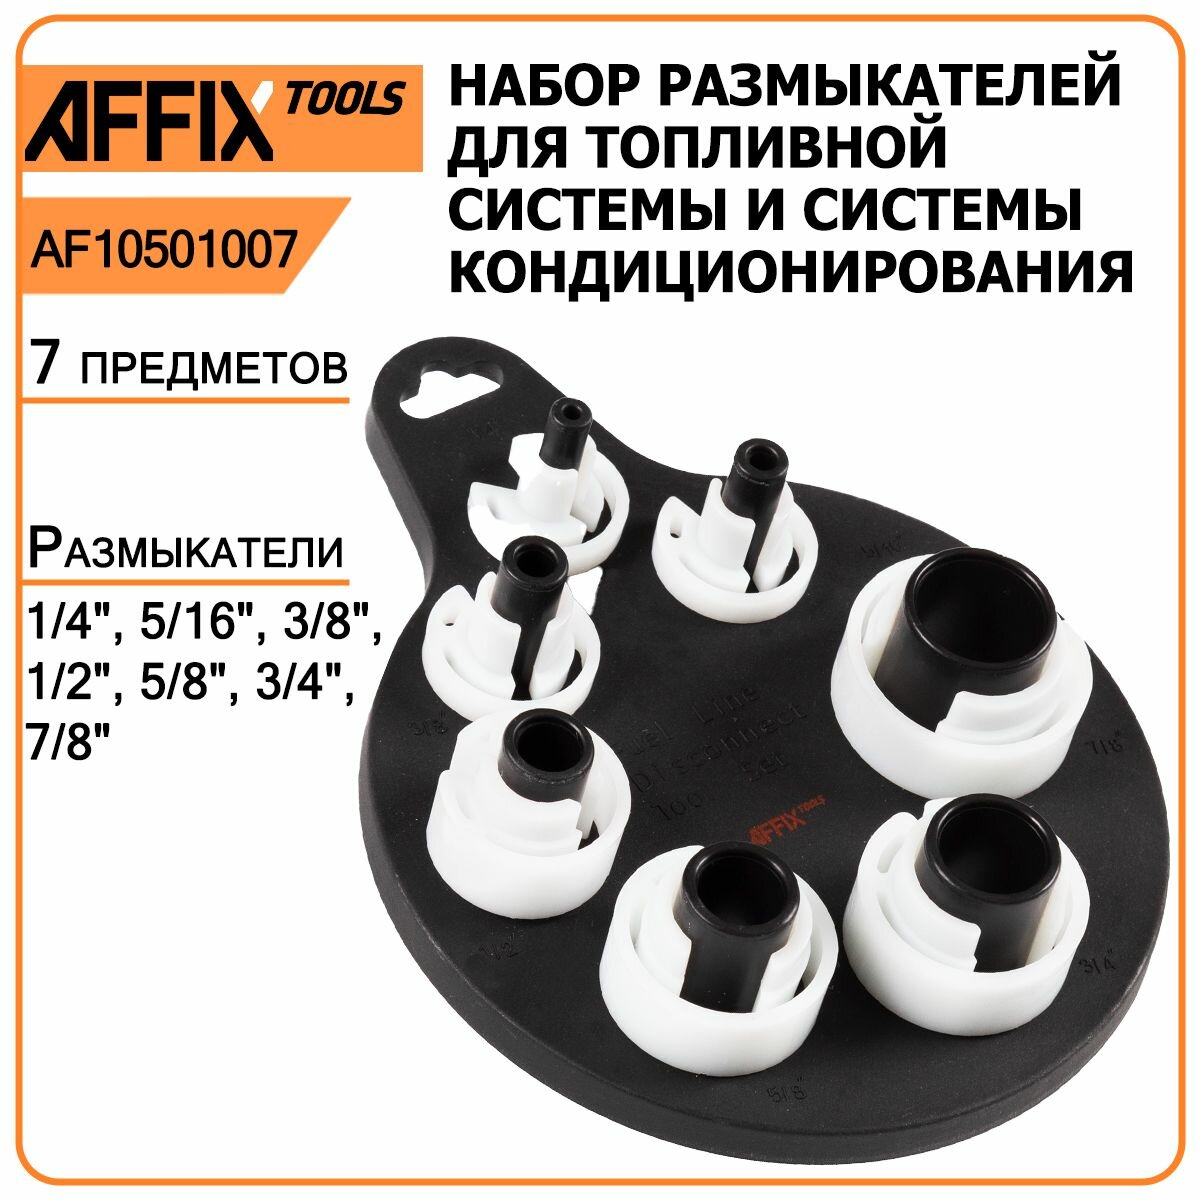 Набор размыкателей для топливной системы и системы кондиционирования AFFIX AF10501007, 7 предметов, демонтаж быстросъёмных соединений